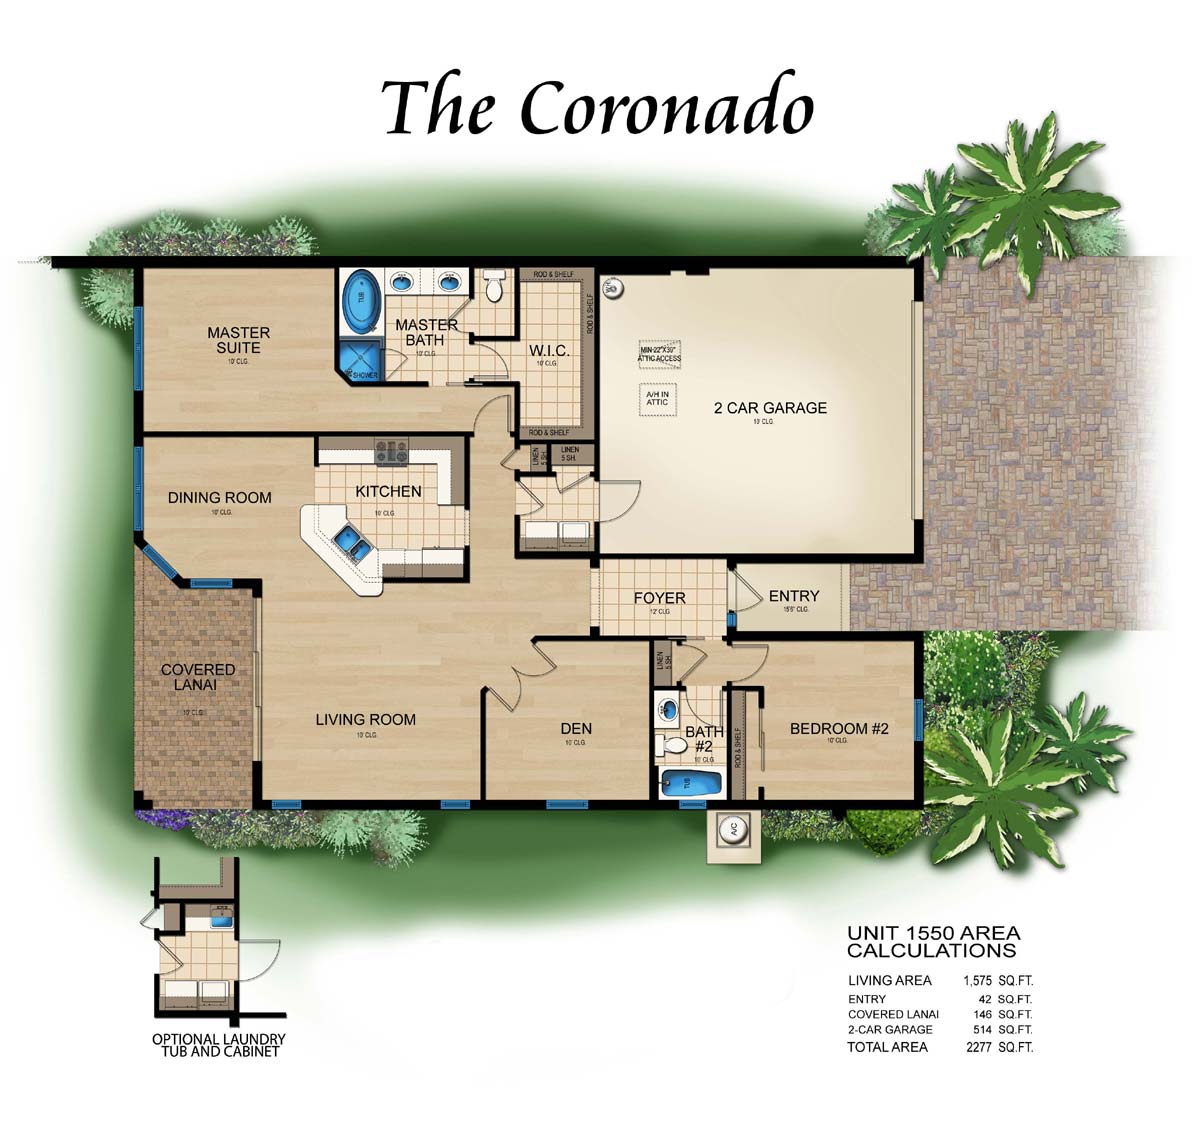 Esperanza Villas in Paseo Coronado Floor Plan, 2 bedroom, 2 bath, living room, dining room, den and 2 car garage